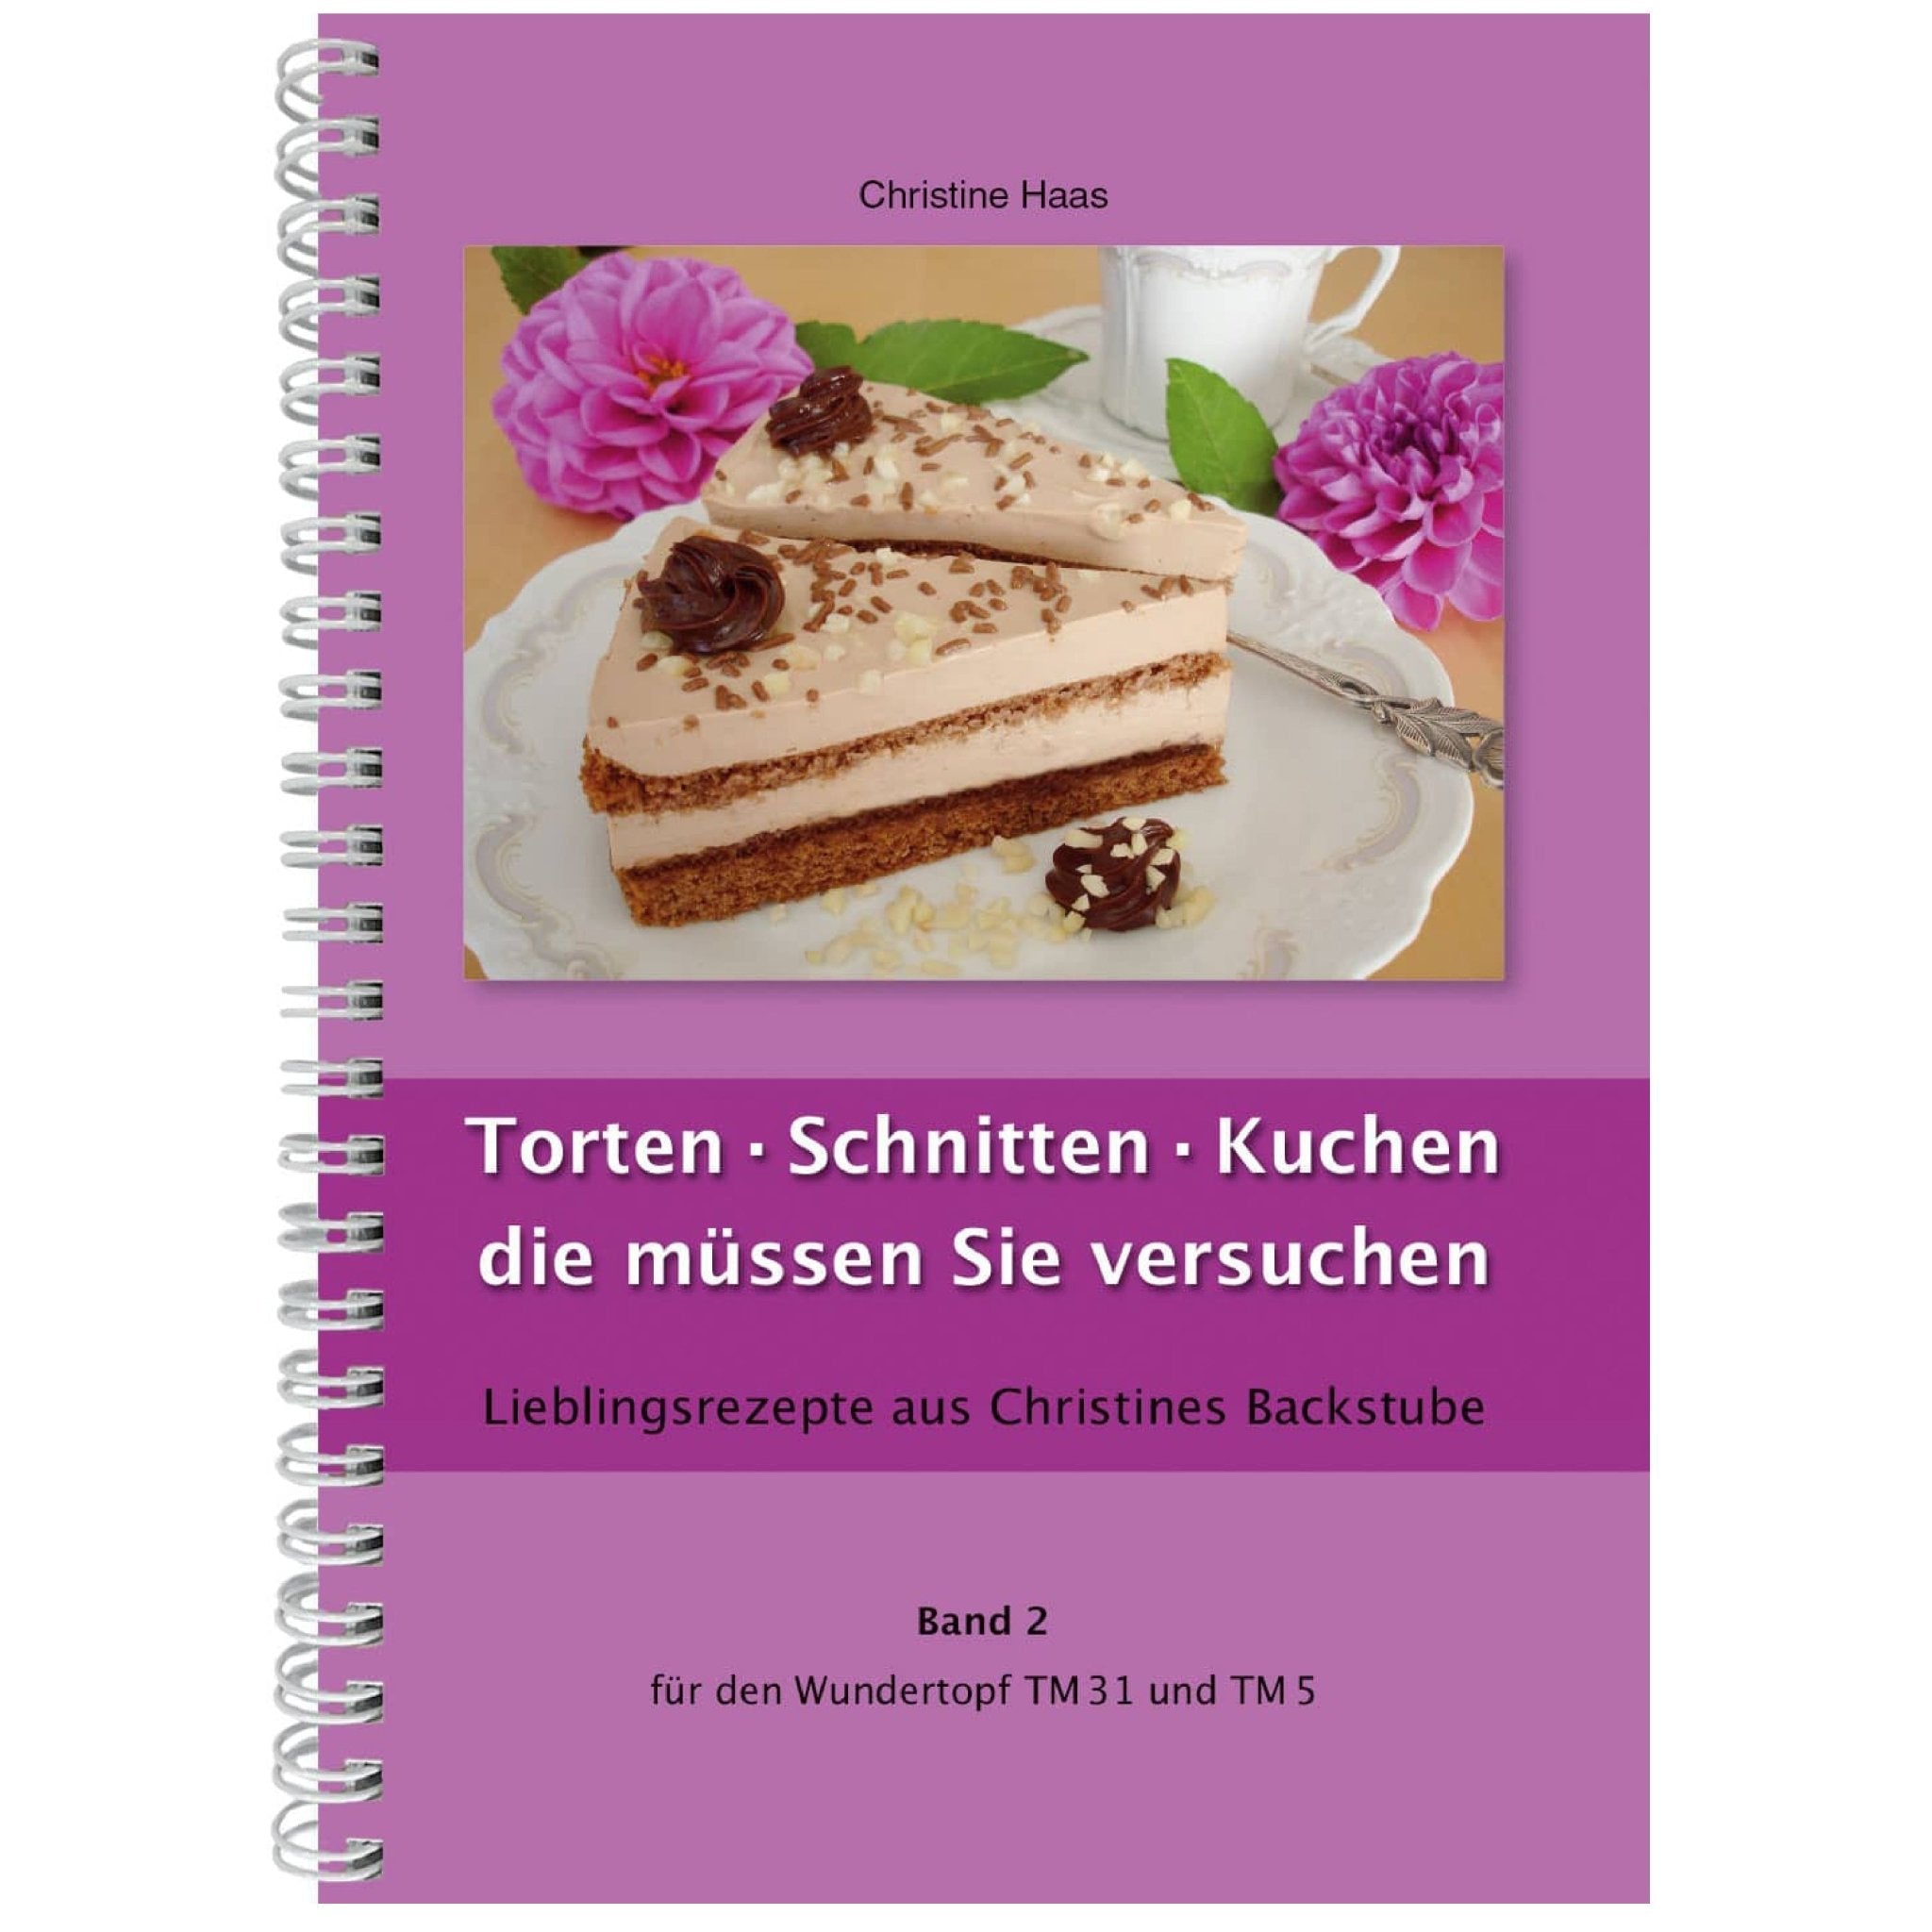 Torten · Schnitten · Kuchen die müssen Sie versuchen | Christine Haas | Band 2 - Wundermix GmbH